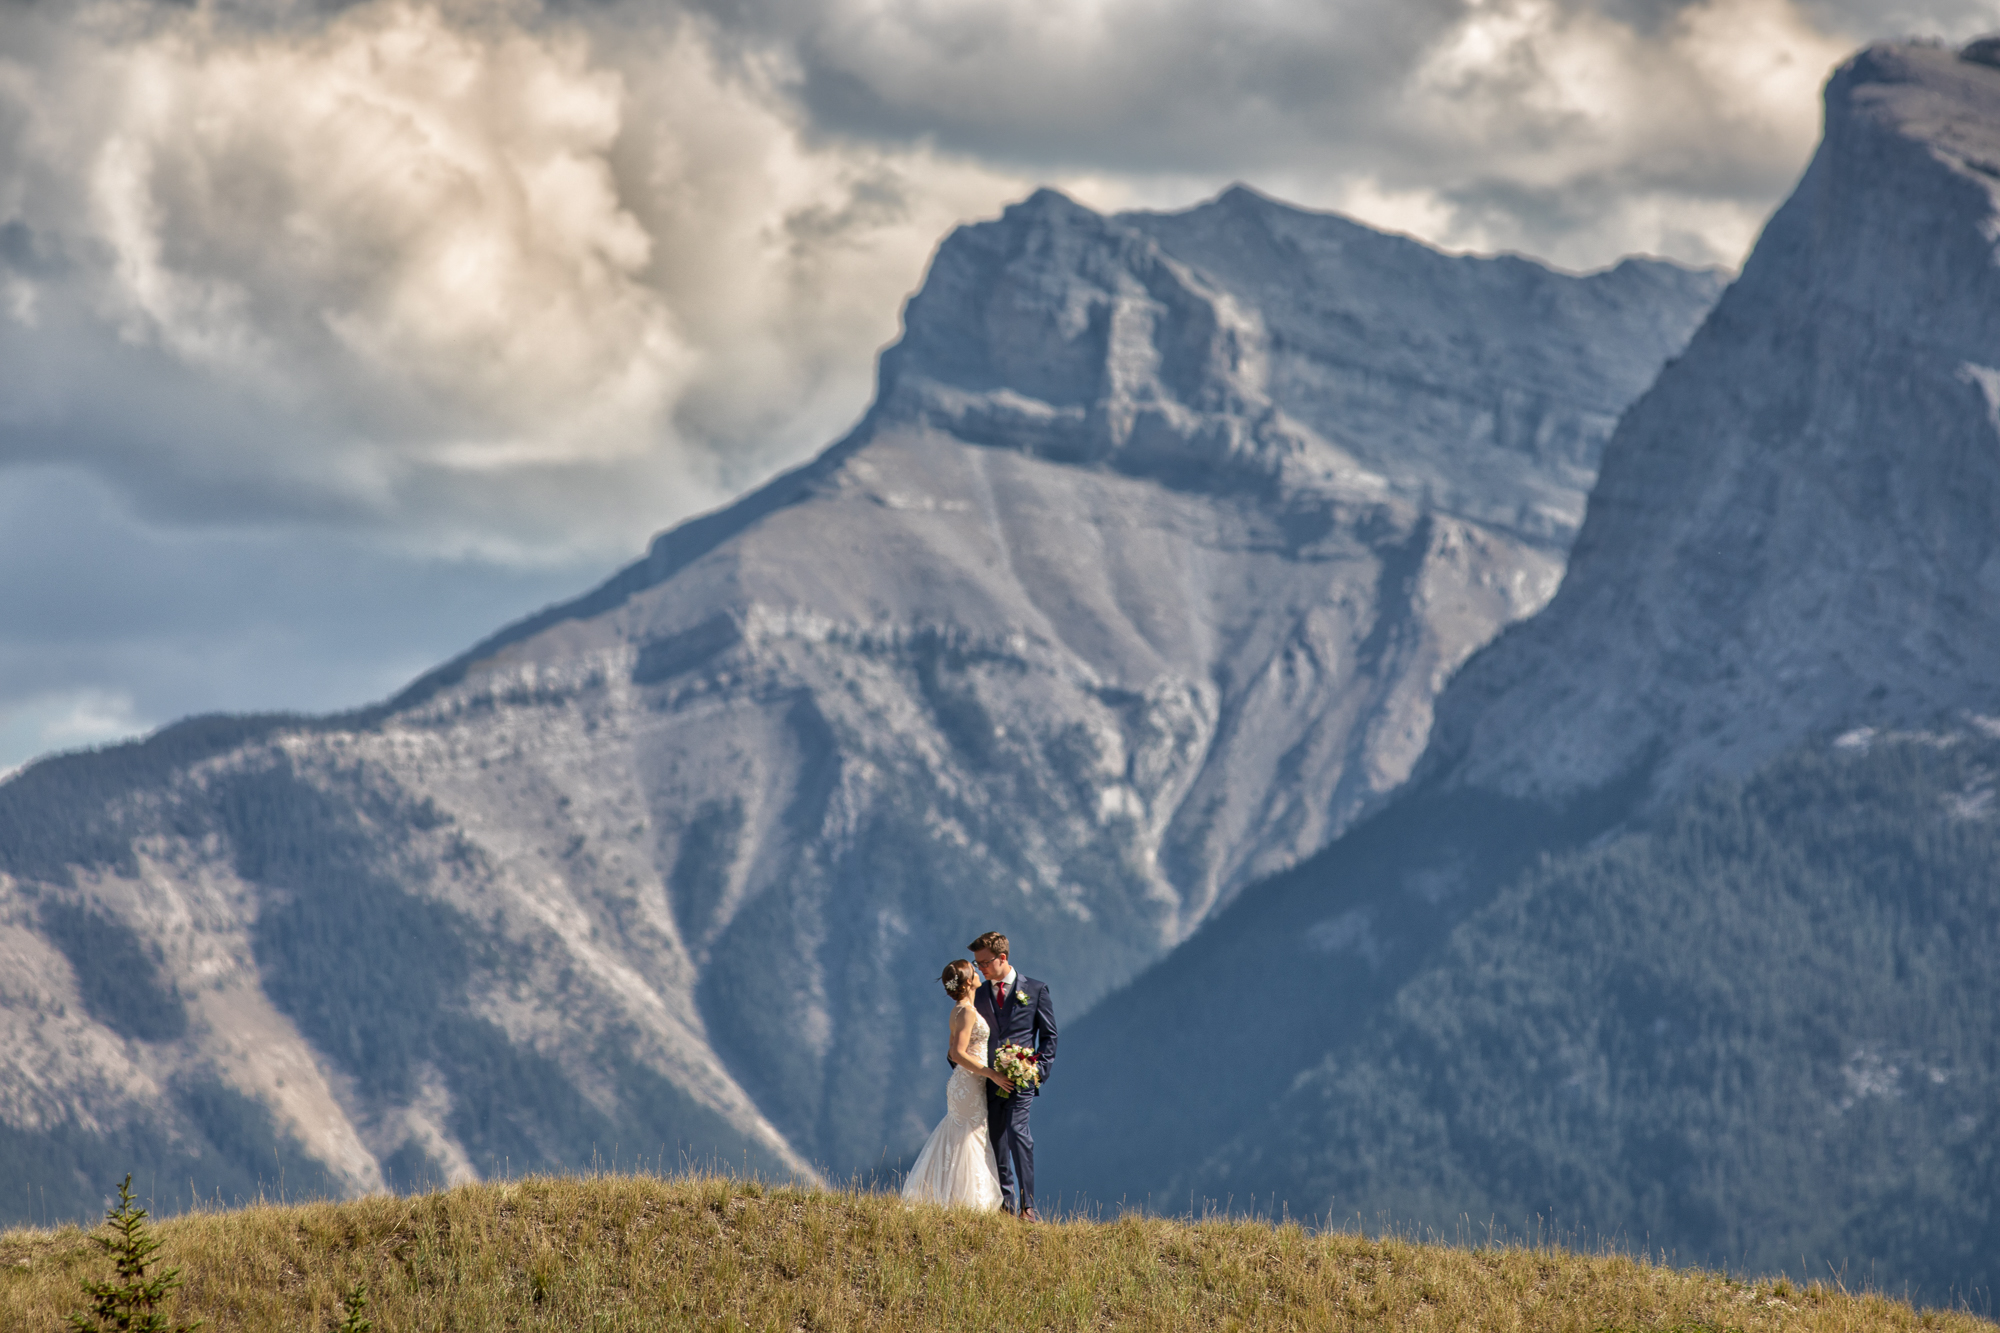 Lake Louise wedding photographers, Banff Wedding Photographers, Canmore Wedding Photographers, Emera